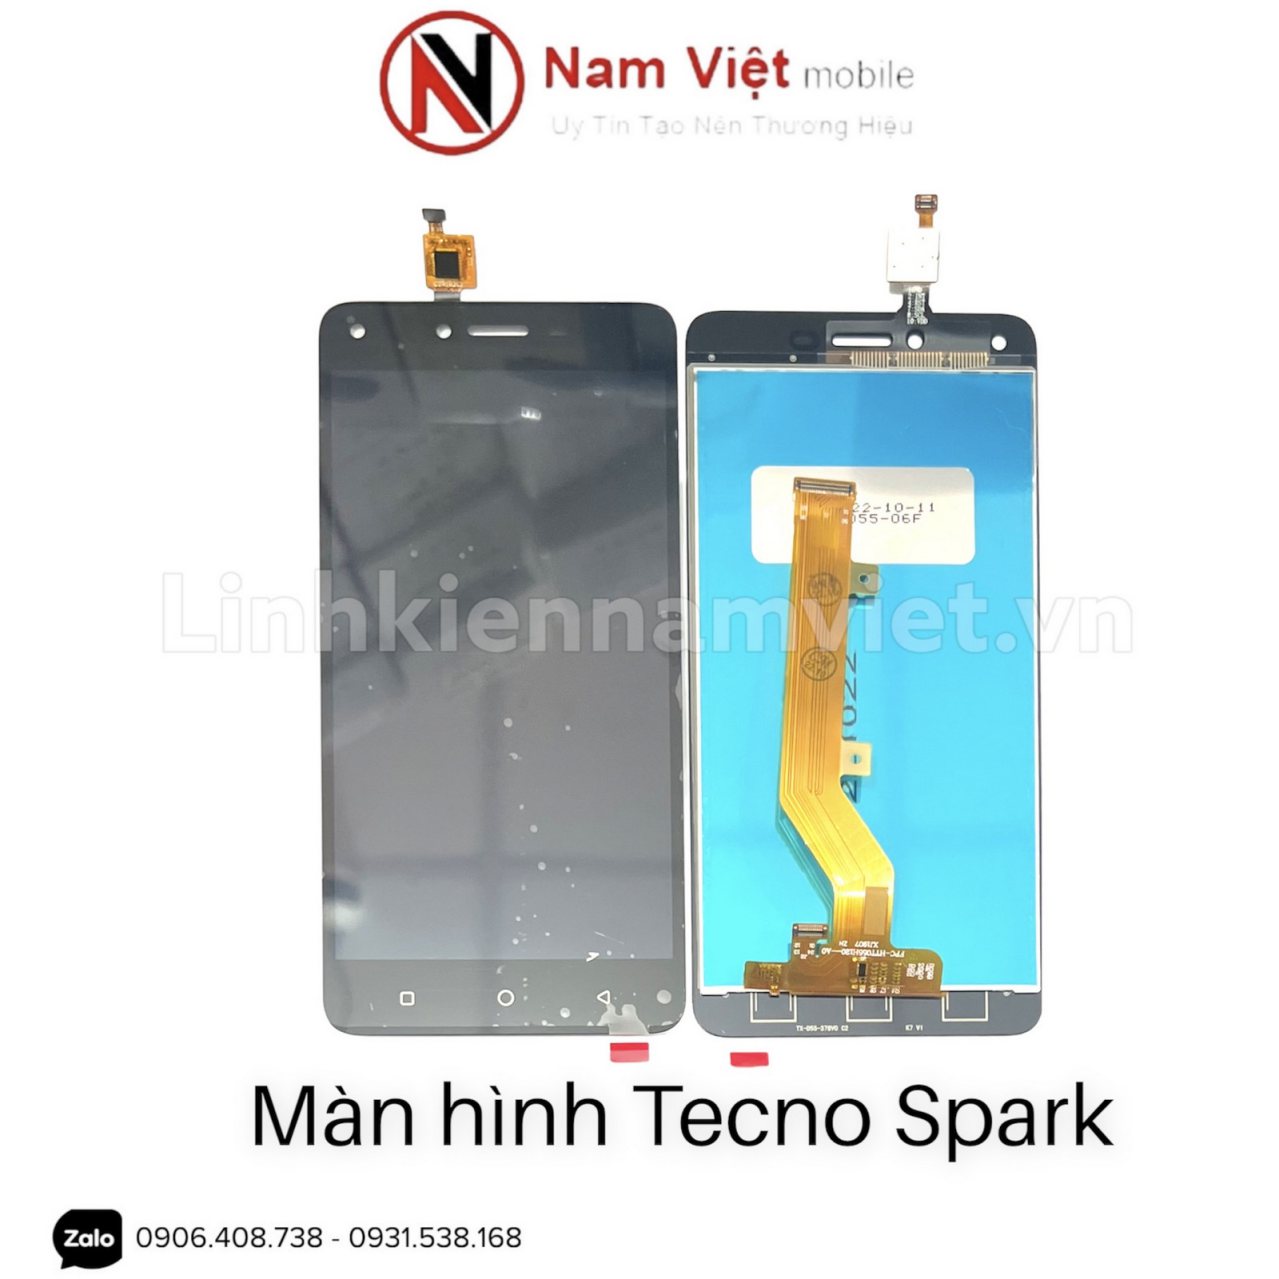 Man-hinh-Tecno-Spark